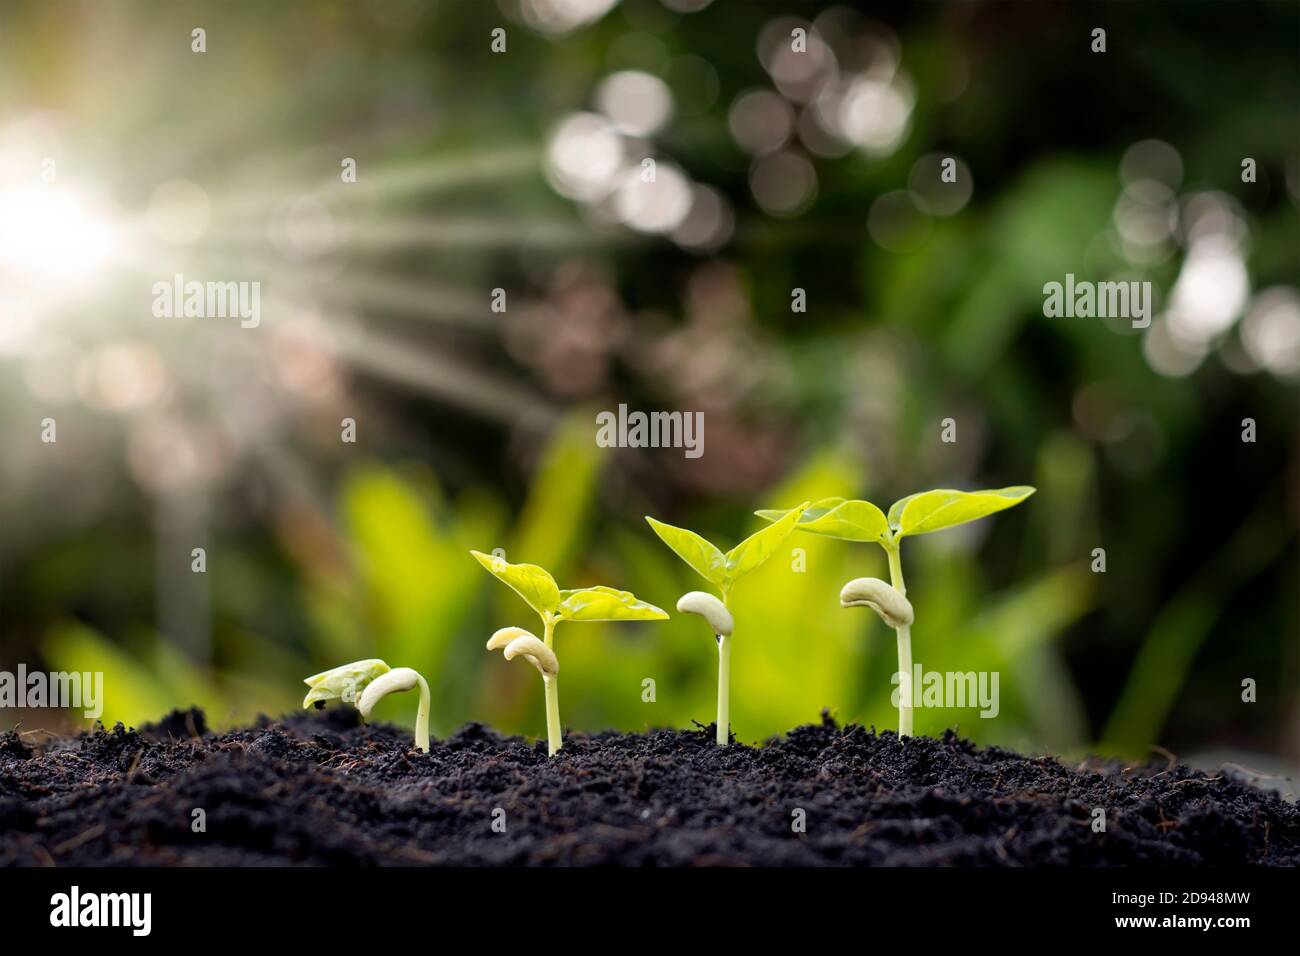 Setzlinge wachsen aus fruchtbarem Boden, einschließlich der Entwicklung des Pflanzenwachstums von Samen zu Setzlingen. Konzept der Ökologie und Landwirtschaft. Stockfoto